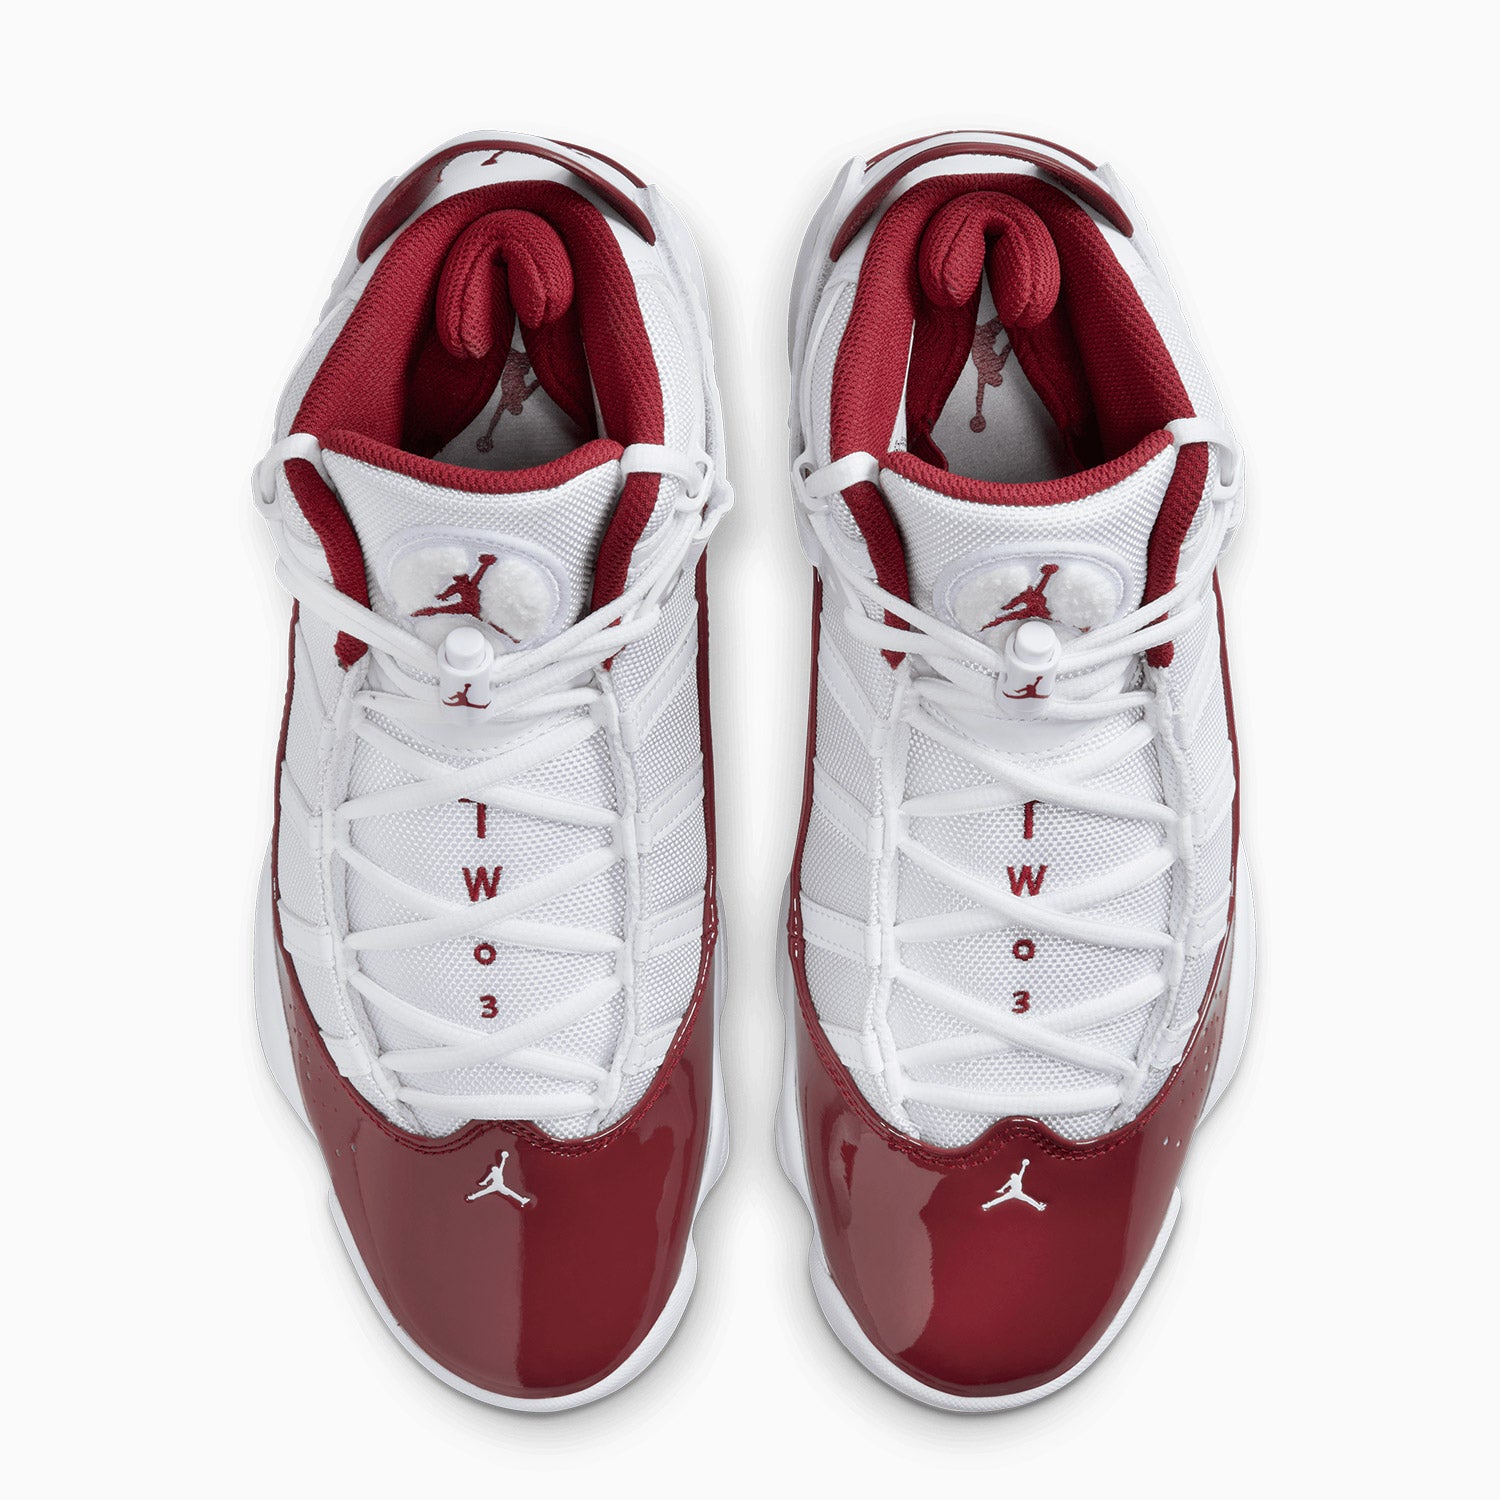 mens-jordan-6-rings-team-red-shoes-322992-165